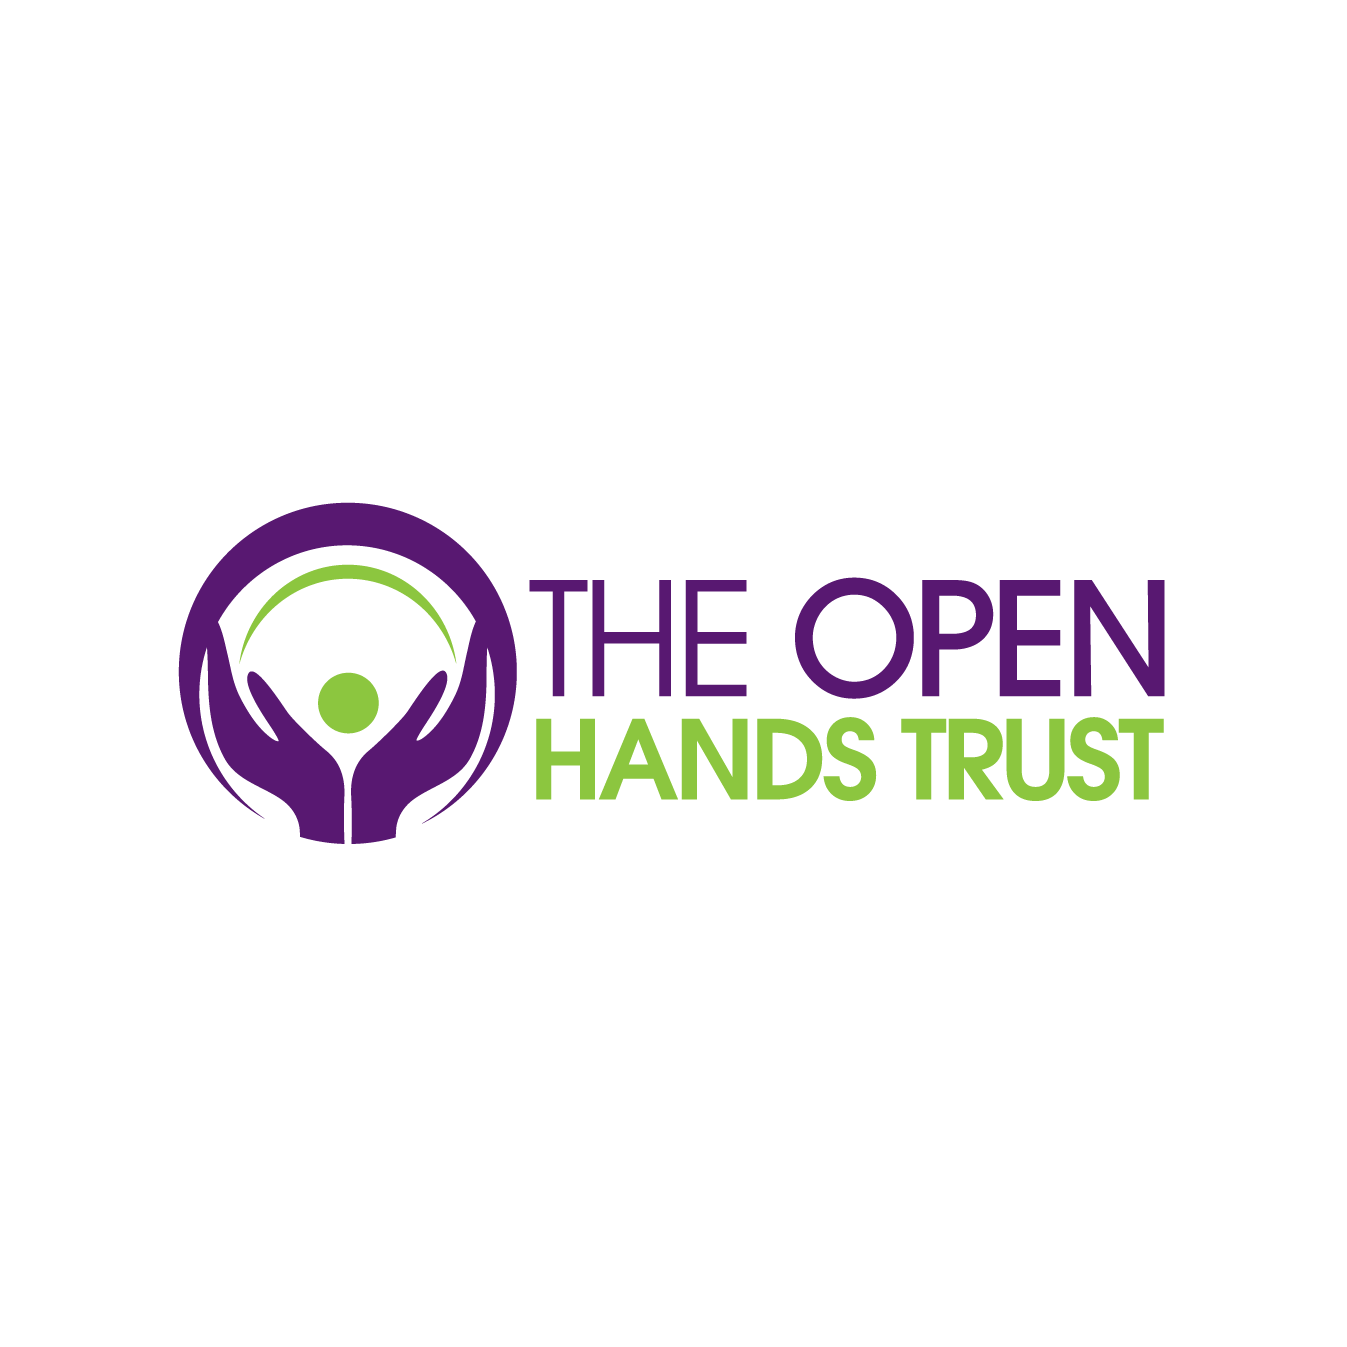 The Open Hands Trust